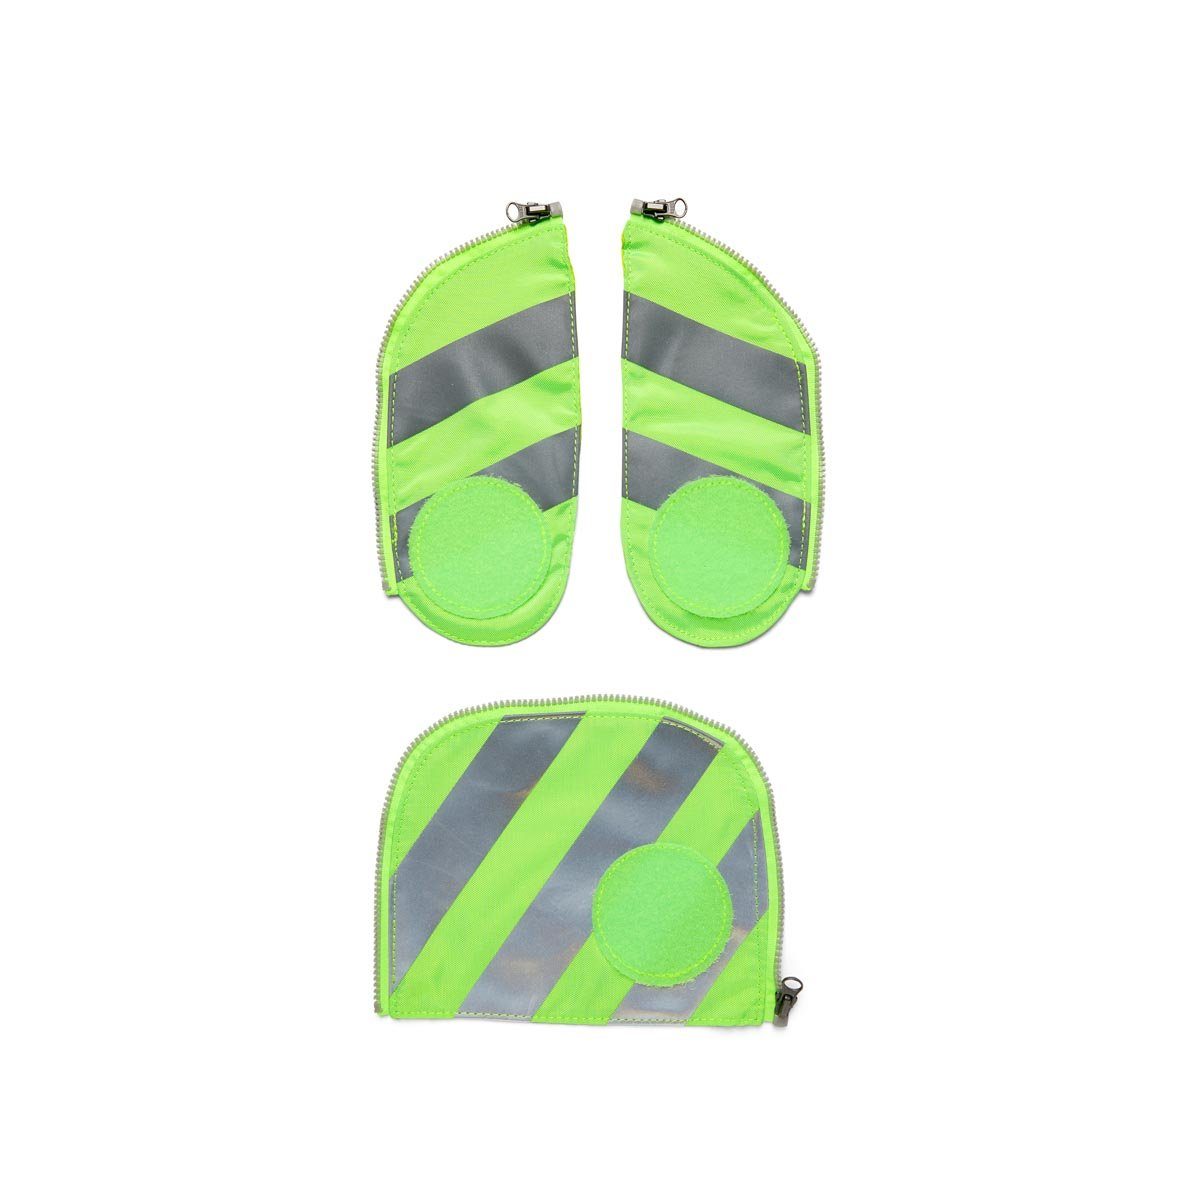 ergobag Schulranzen Fluo Zip-Set Sicherheitsset mit Reflektorstreifen, für alle Schultaschenmodelle ab 2019 001-213 Grün